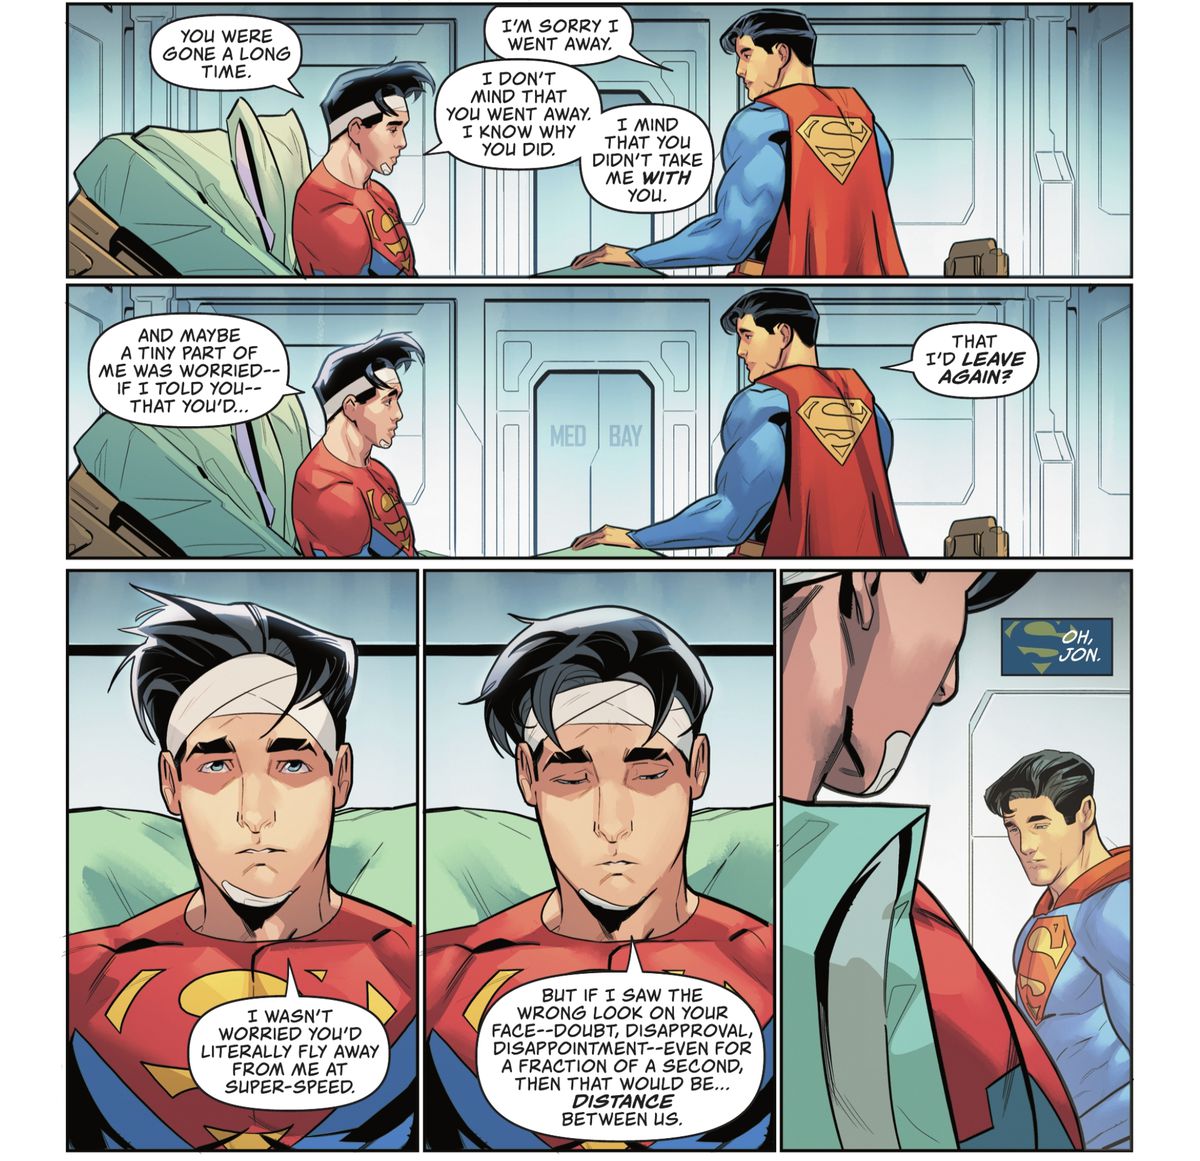 In un letto d'ospedale, con la testa fasciata, Jon/Superman dice a Clark/Superman che se n'è andato da molto tempo.  E una piccola parte di lui era preoccupata che se gli avesse detto che era strano e 